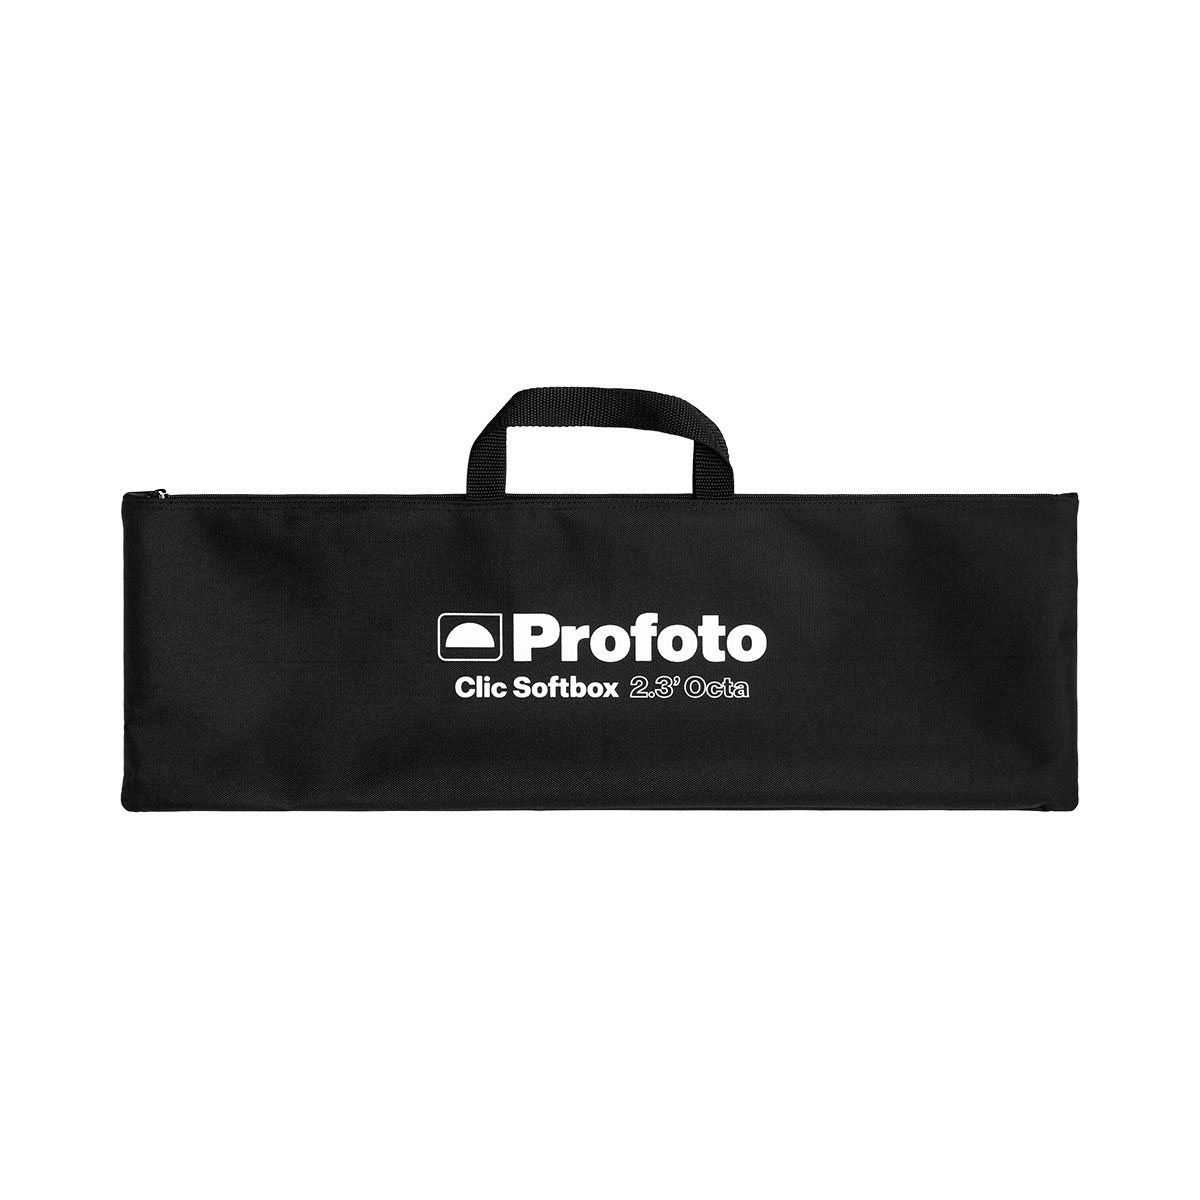 Profoto Clic Softbox 2.3’ Octa